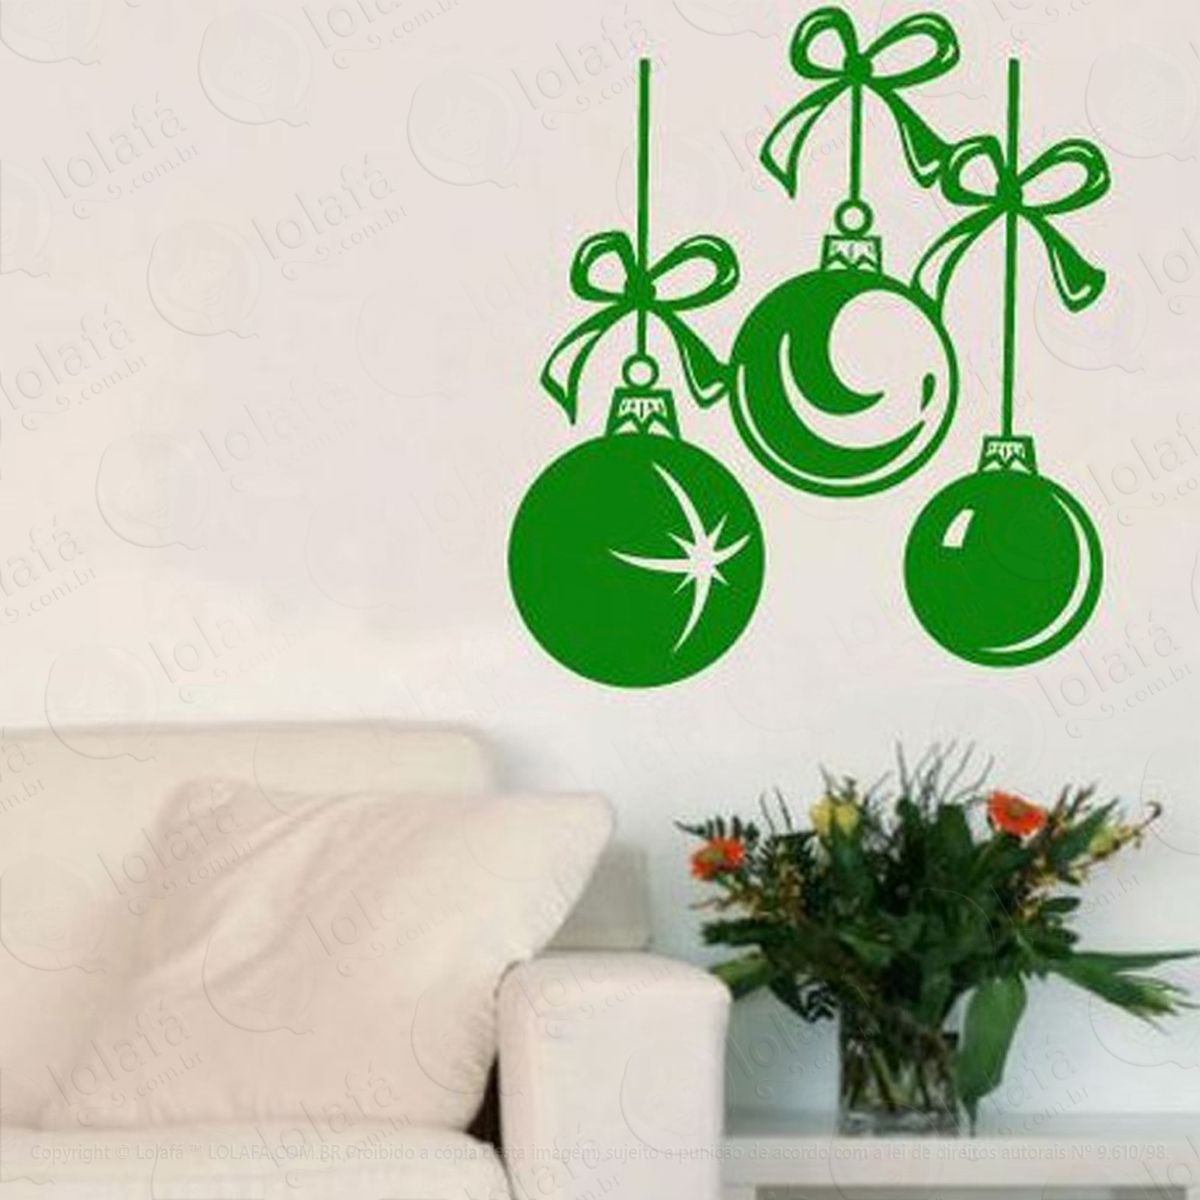 trio de bolas adesivo de natal para vitrine, parede, porta de vidro - decoração natalina mod:256